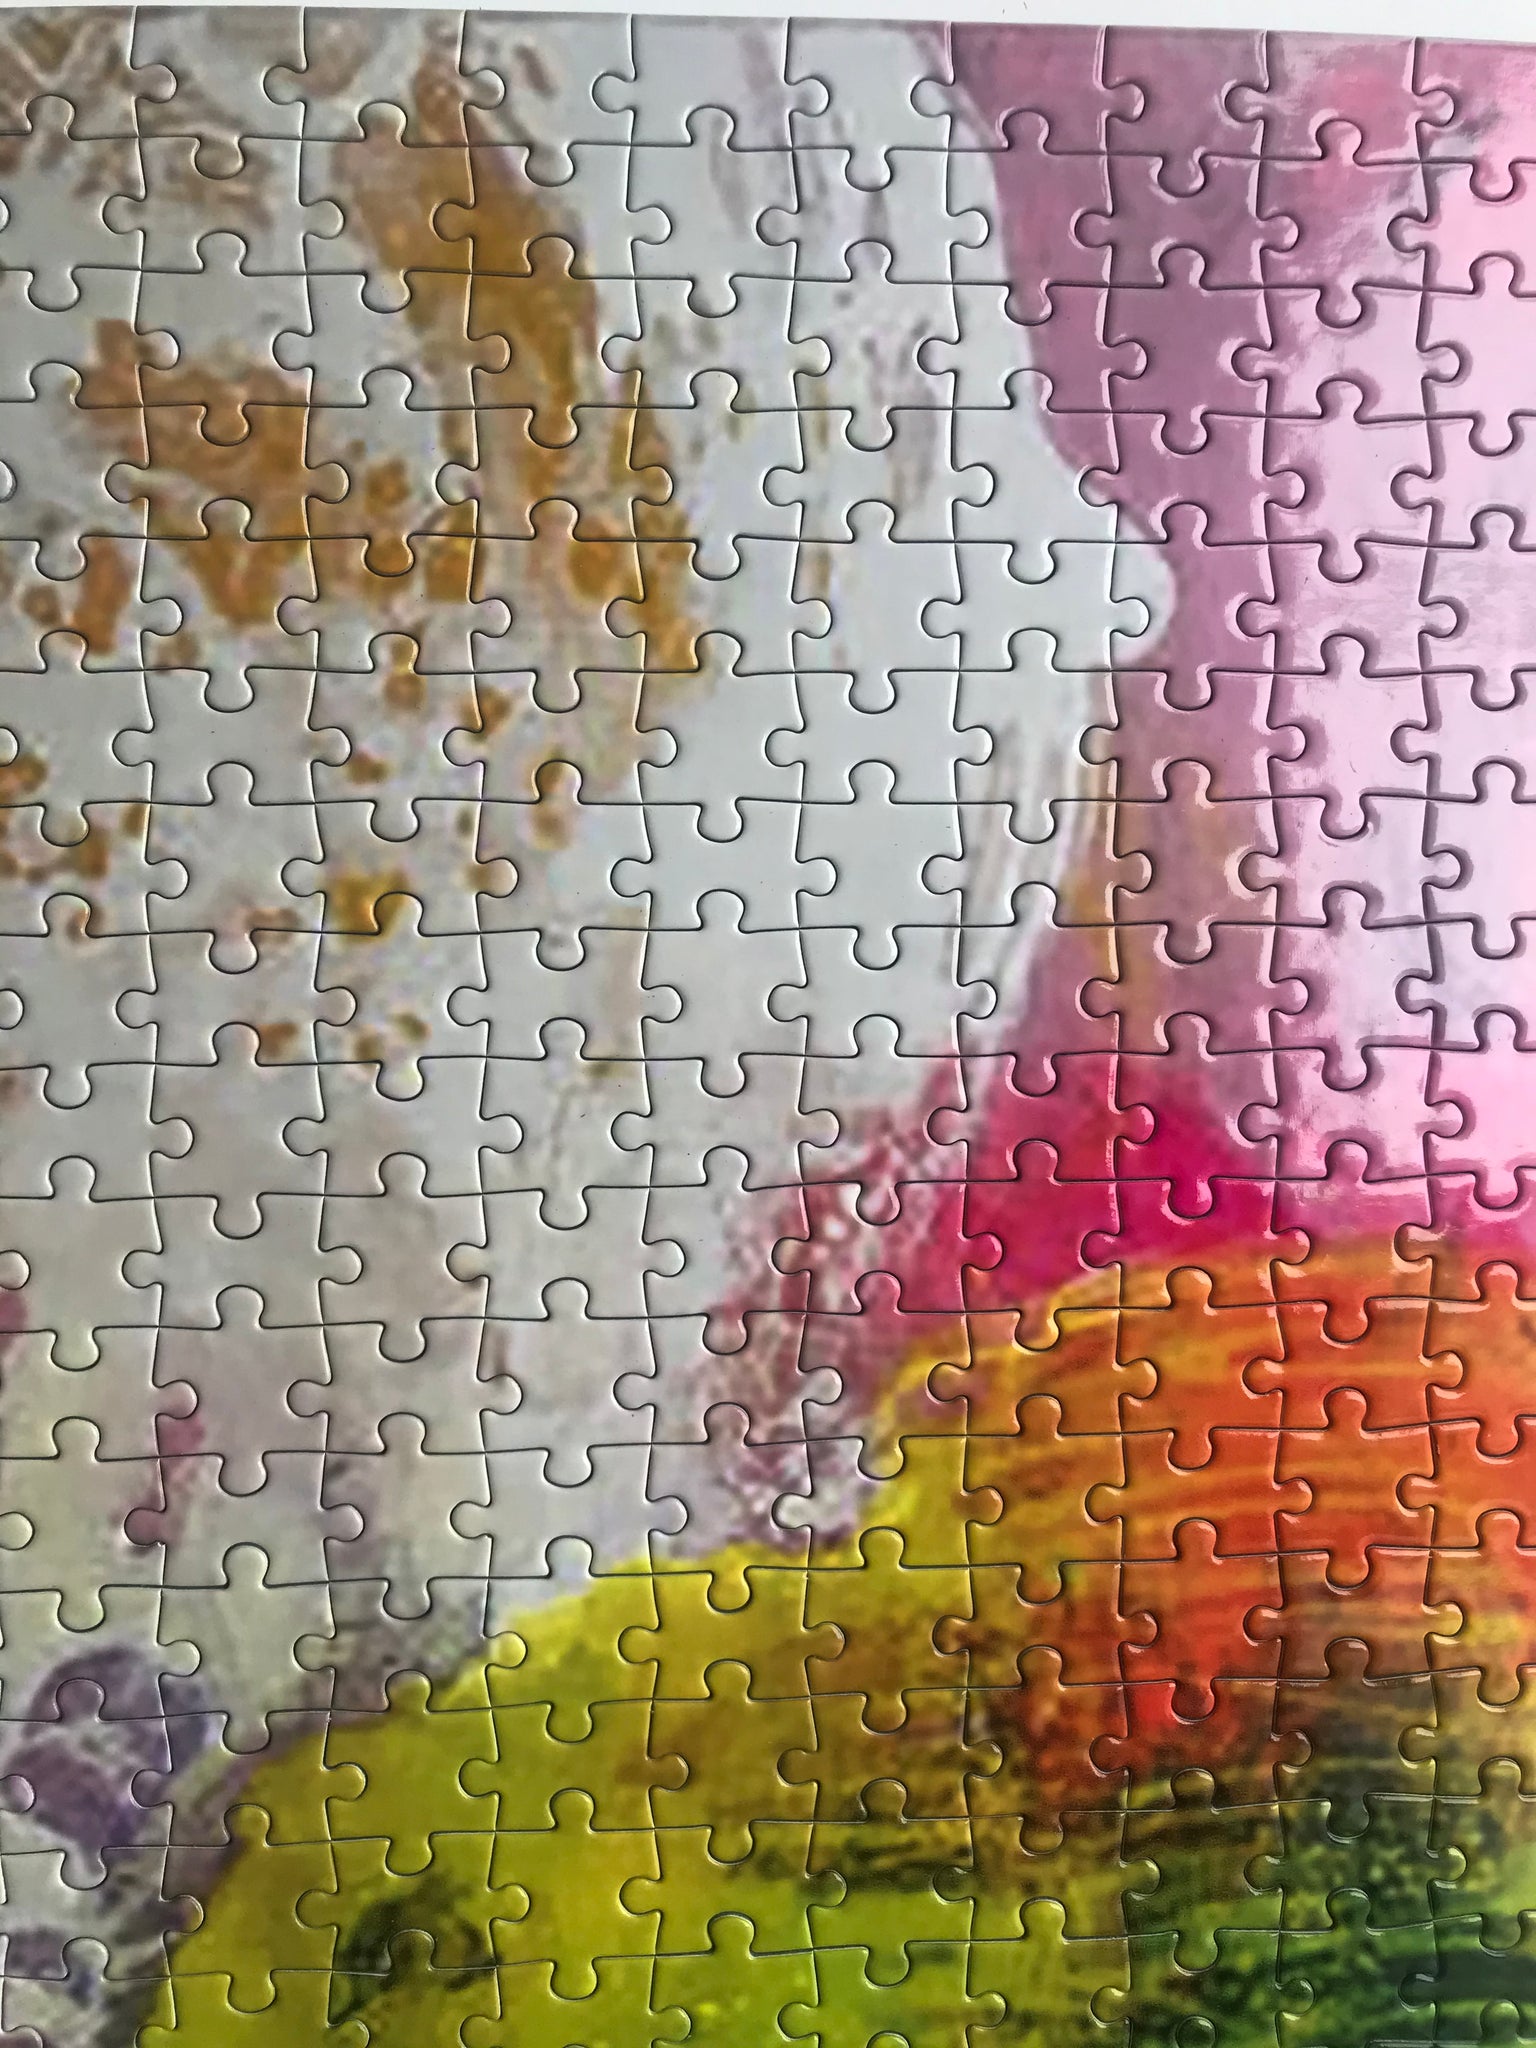 Artist Martin Ålund Collector Edition Jigsaw Puzzle